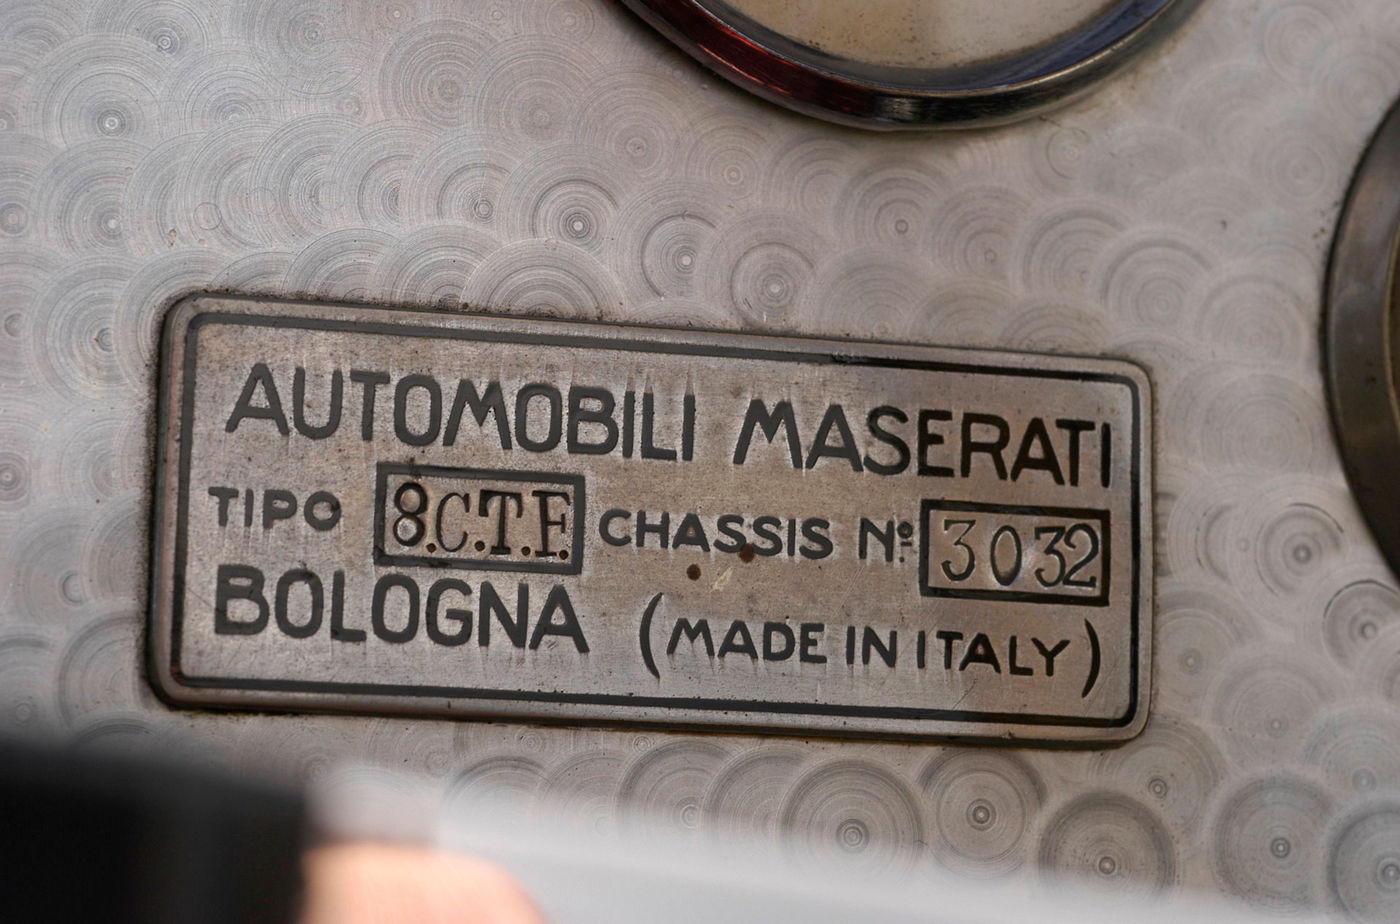 Inscripción "AUTOMOBILI MASERATI TIPO 8CTF CHASSIS N.3032 BOLOGNA (MADE IN ITALY)"